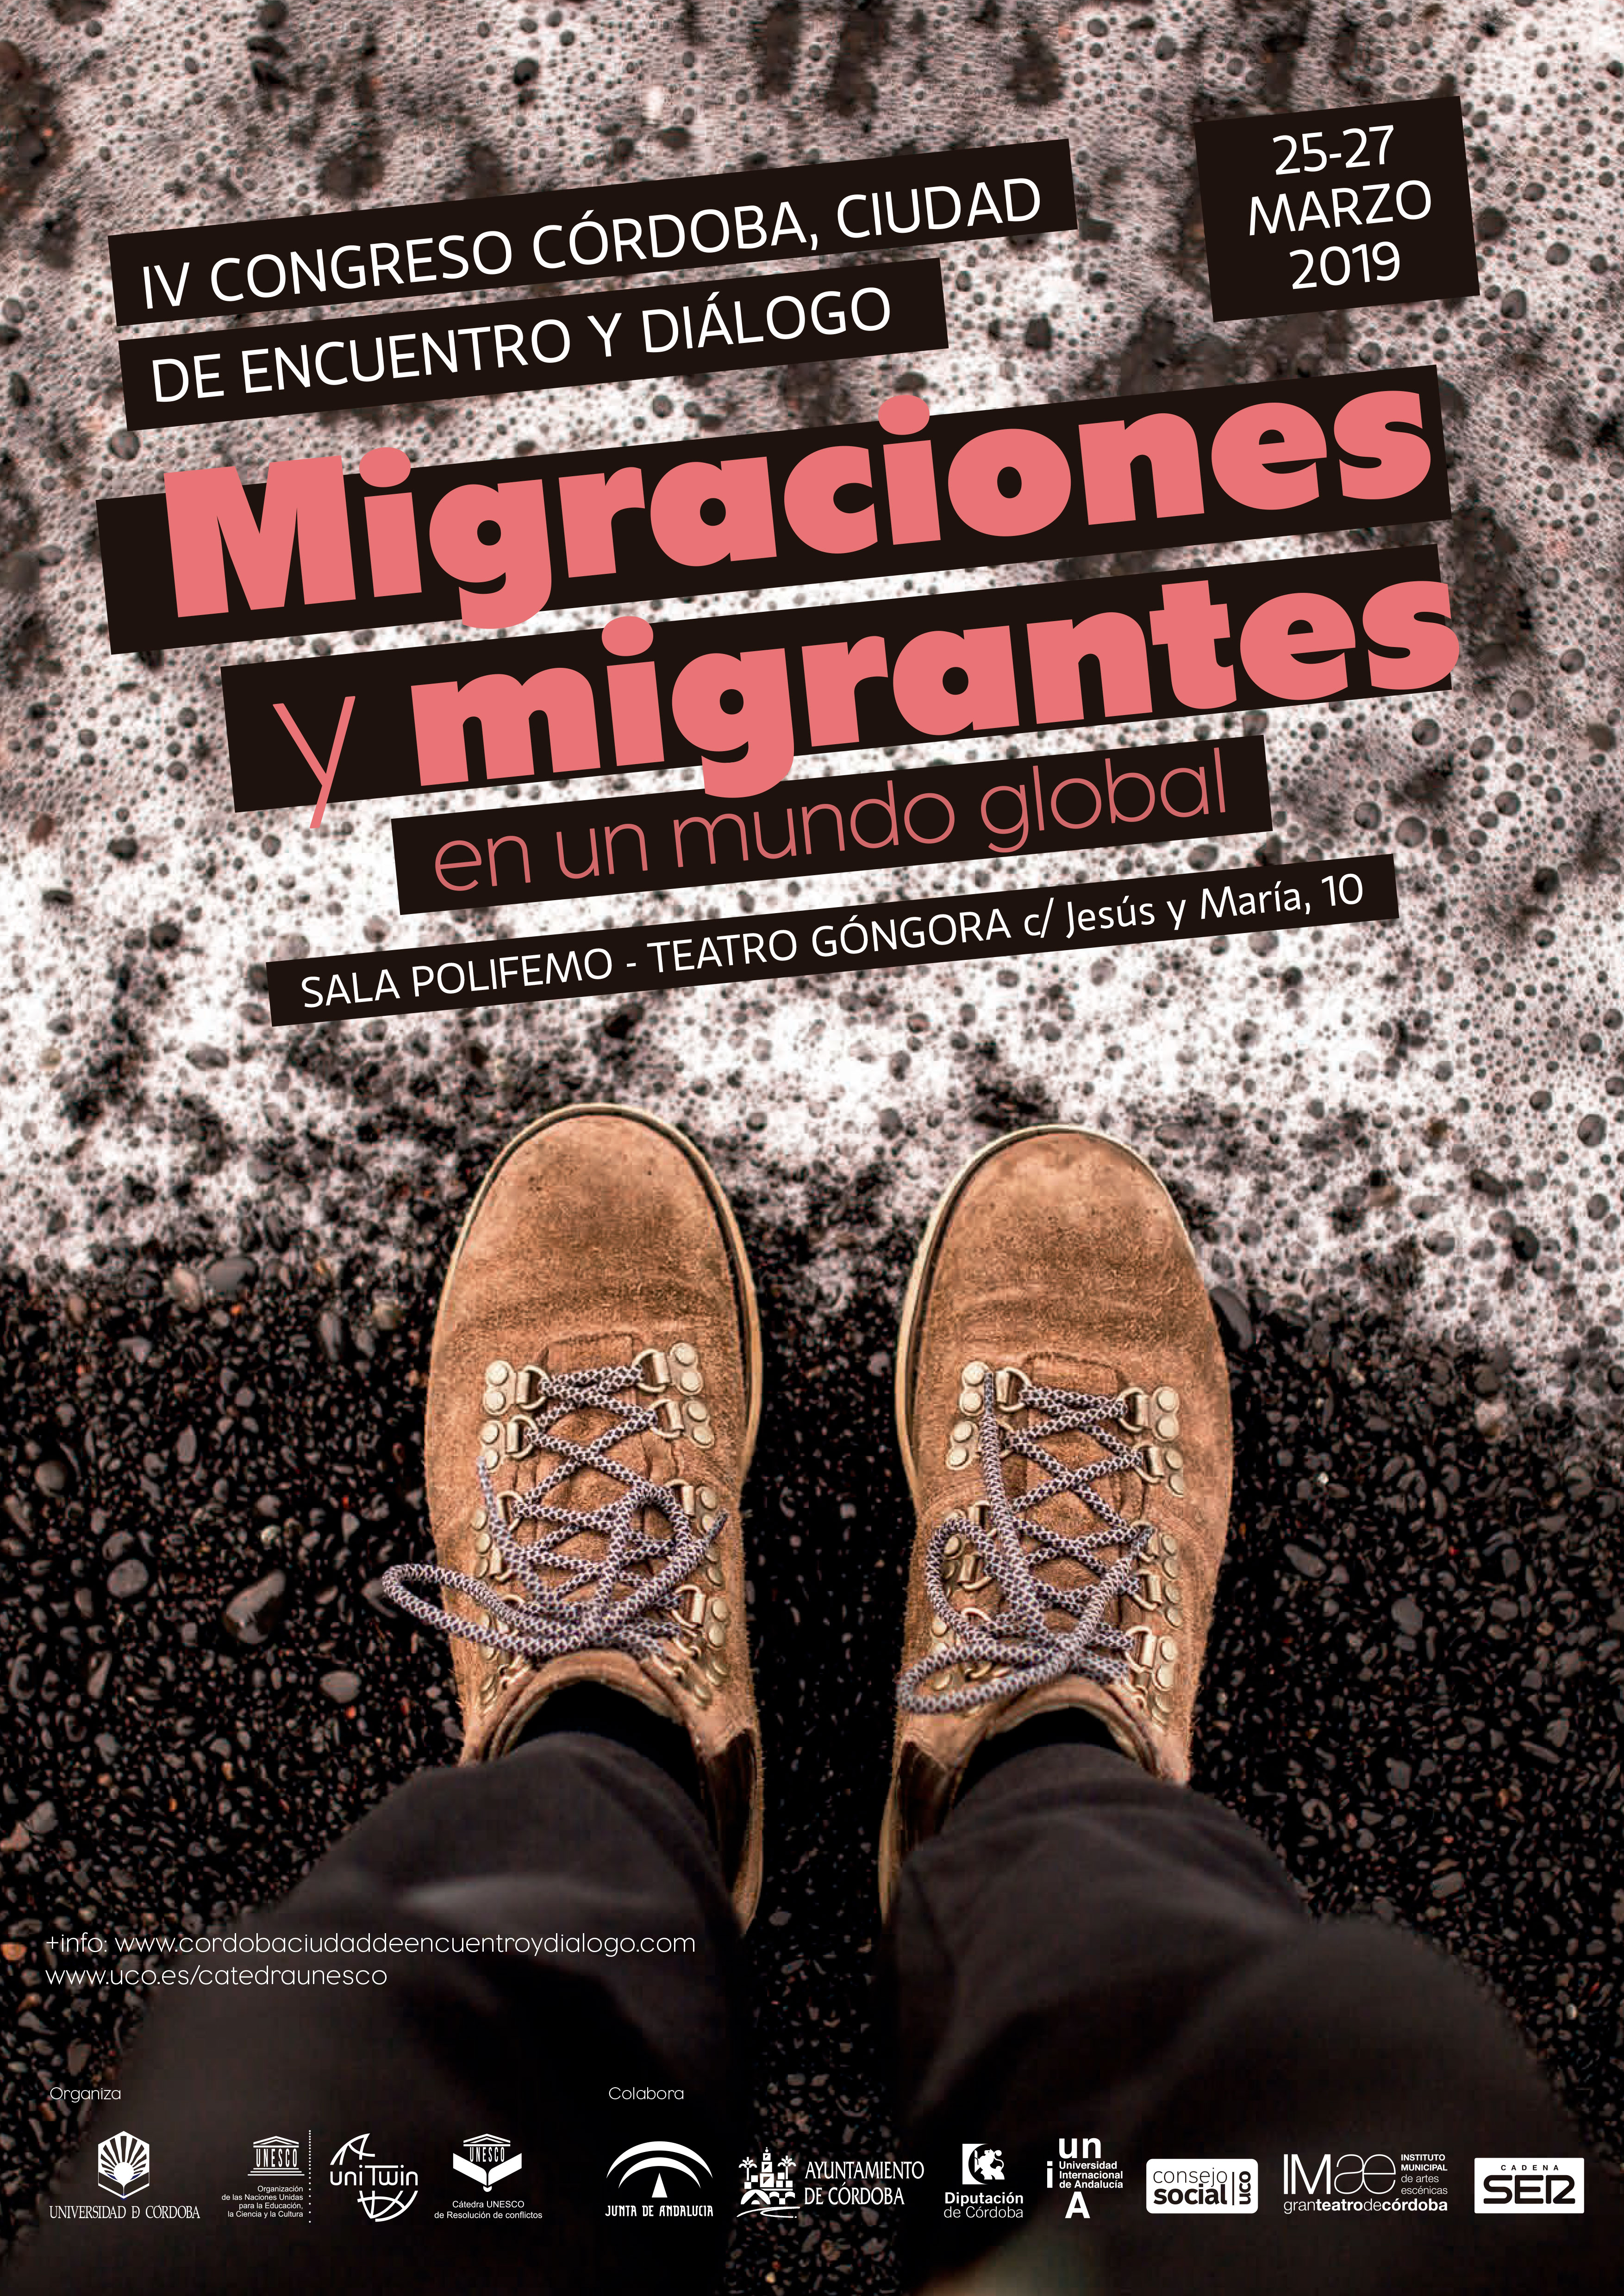 IV Congreso Córdoba Ciudad de encuentro y diálodo: Migraciones y migrantes en un mundo global